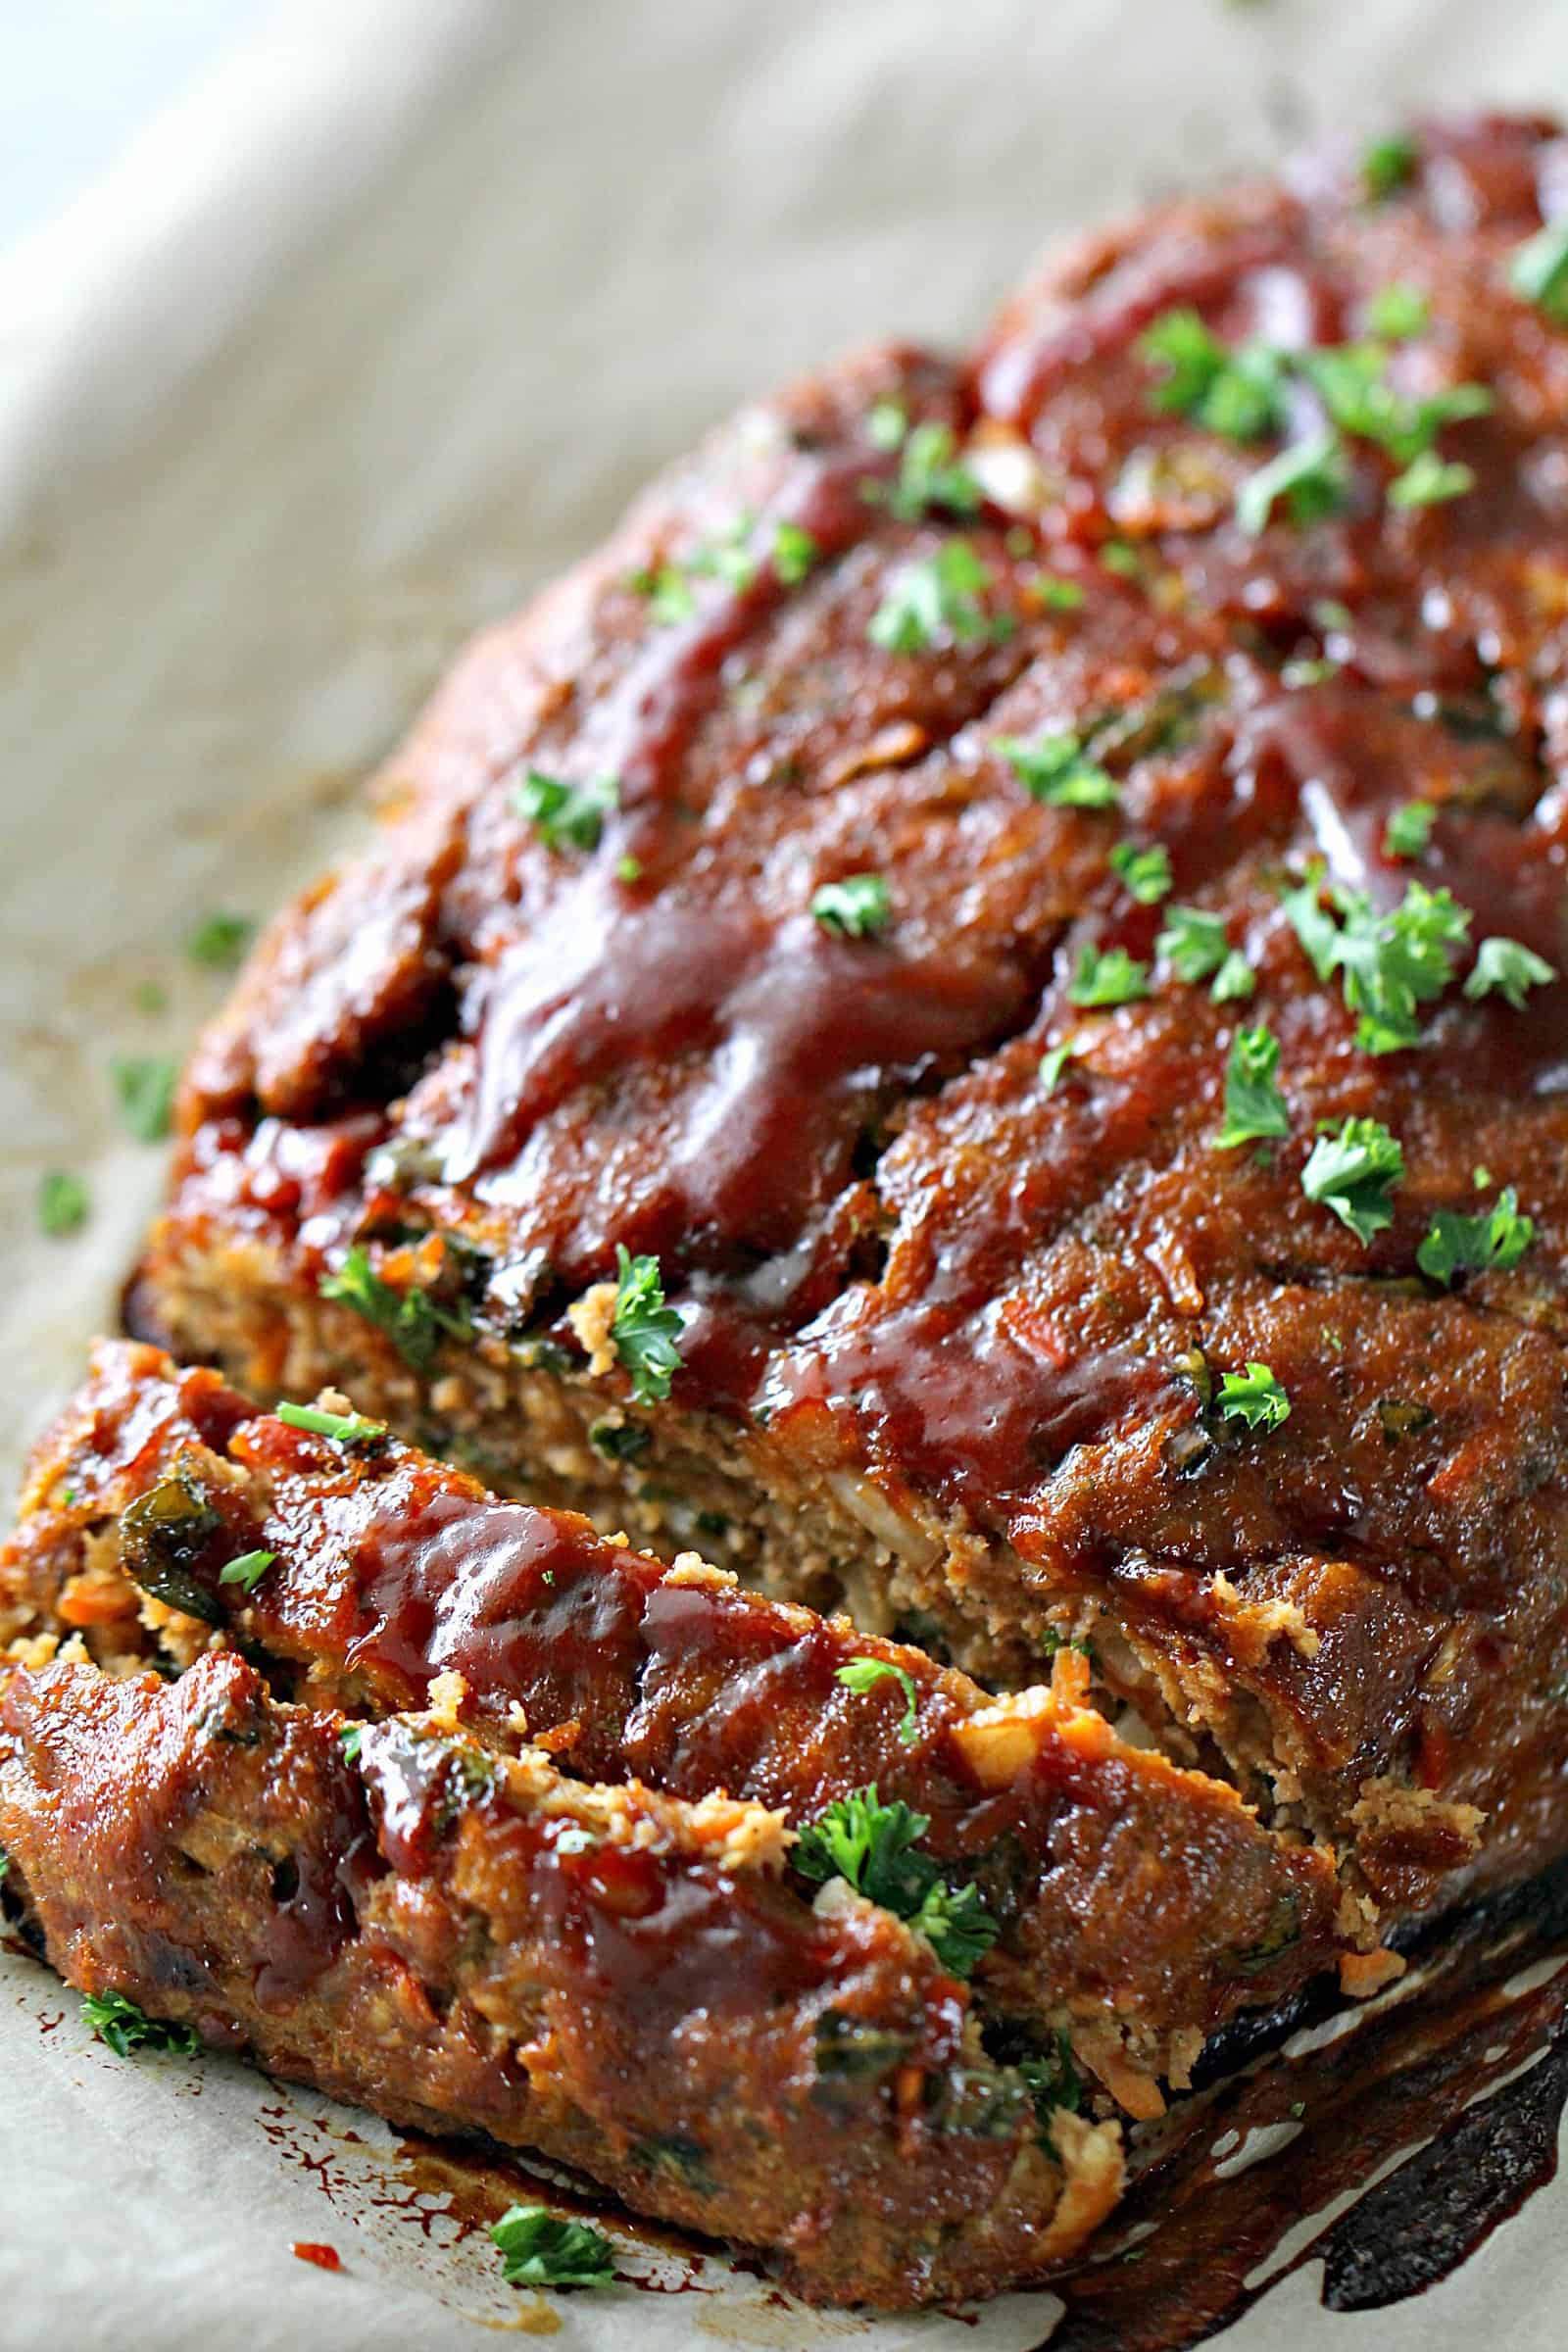 Best Turkey Meatloaf Recipe - How to Make Turkey Meatloaf